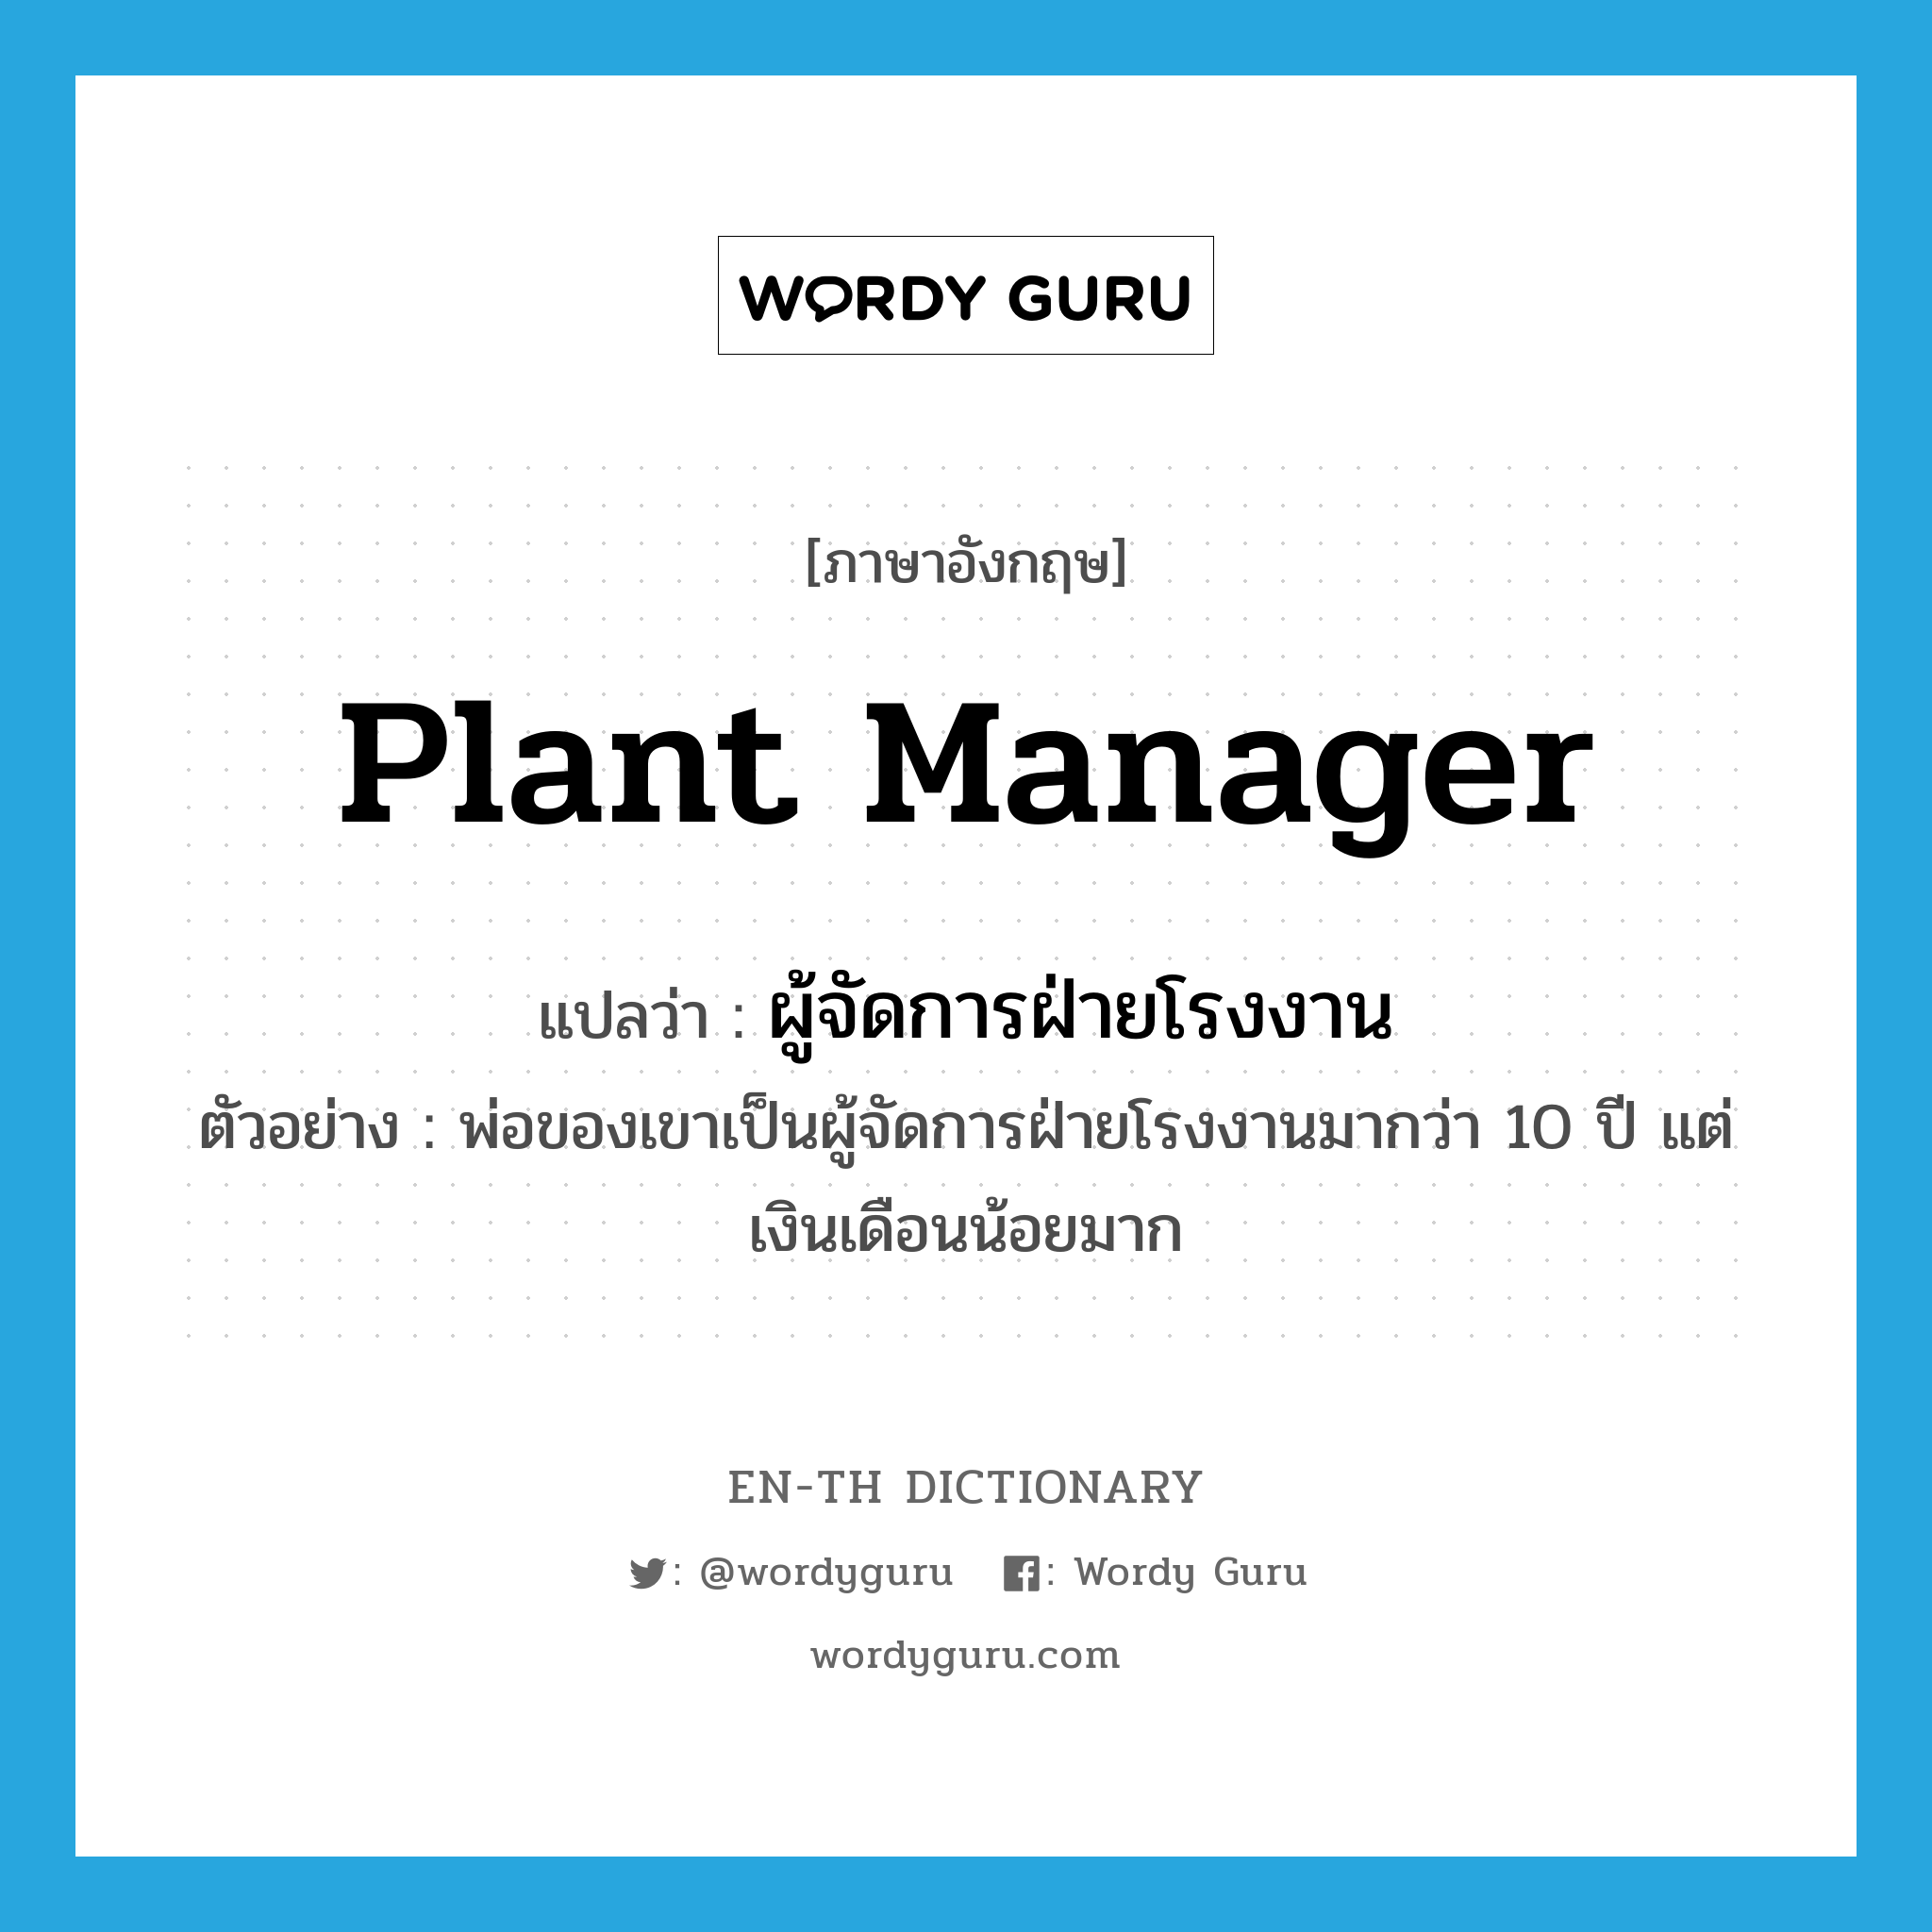 plant manager แปลว่า?, คำศัพท์ภาษาอังกฤษ plant manager แปลว่า ผู้จัดการฝ่ายโรงงาน ประเภท N ตัวอย่าง พ่อของเขาเป็นผู้จัดการฝ่ายโรงงานมากว่า 10 ปี แต่เงินเดือนน้อยมาก หมวด N